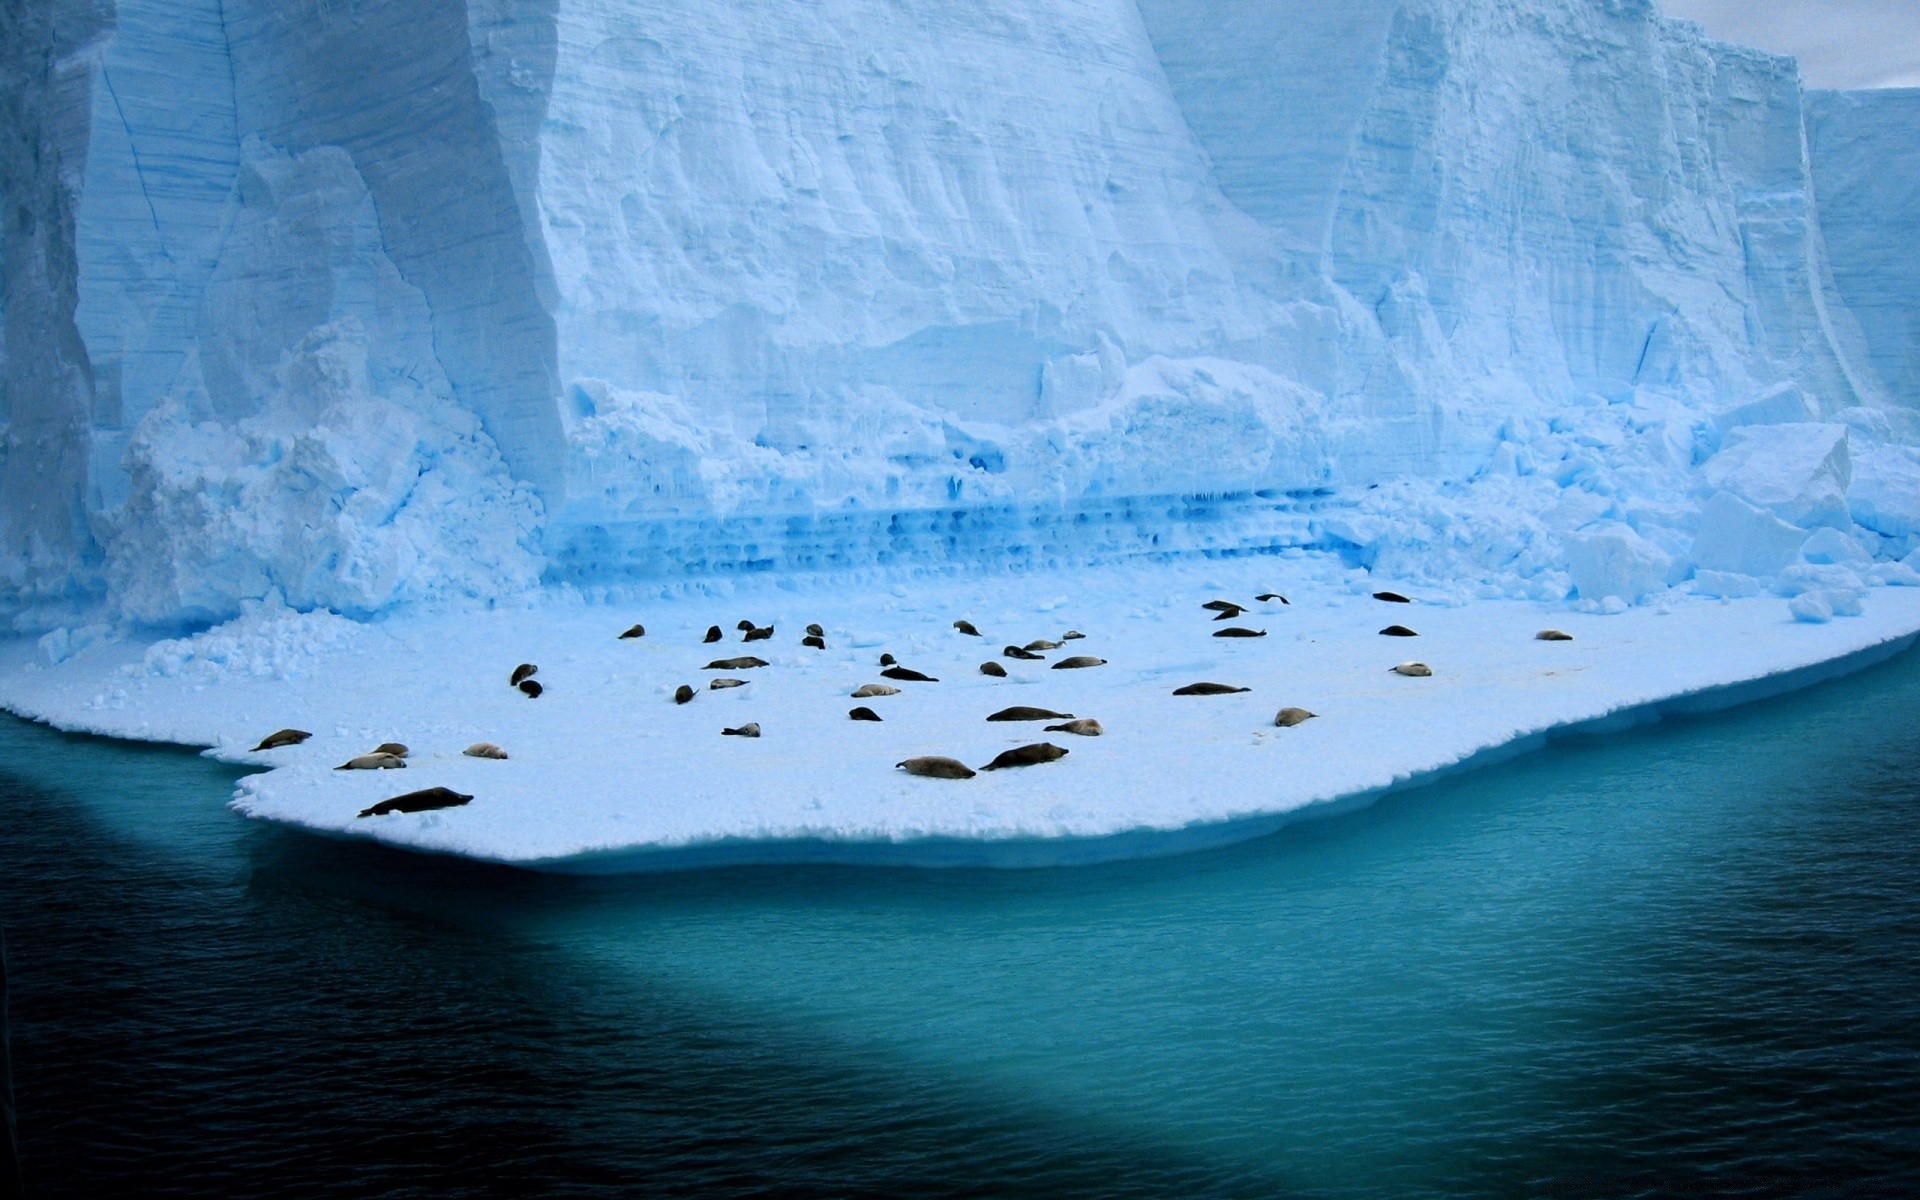 морские животные воды лед айсберг снег пейзаж море зима морозный путешествия океан ледник природа холодная на открытом воздухе плавления замороженные моря небо